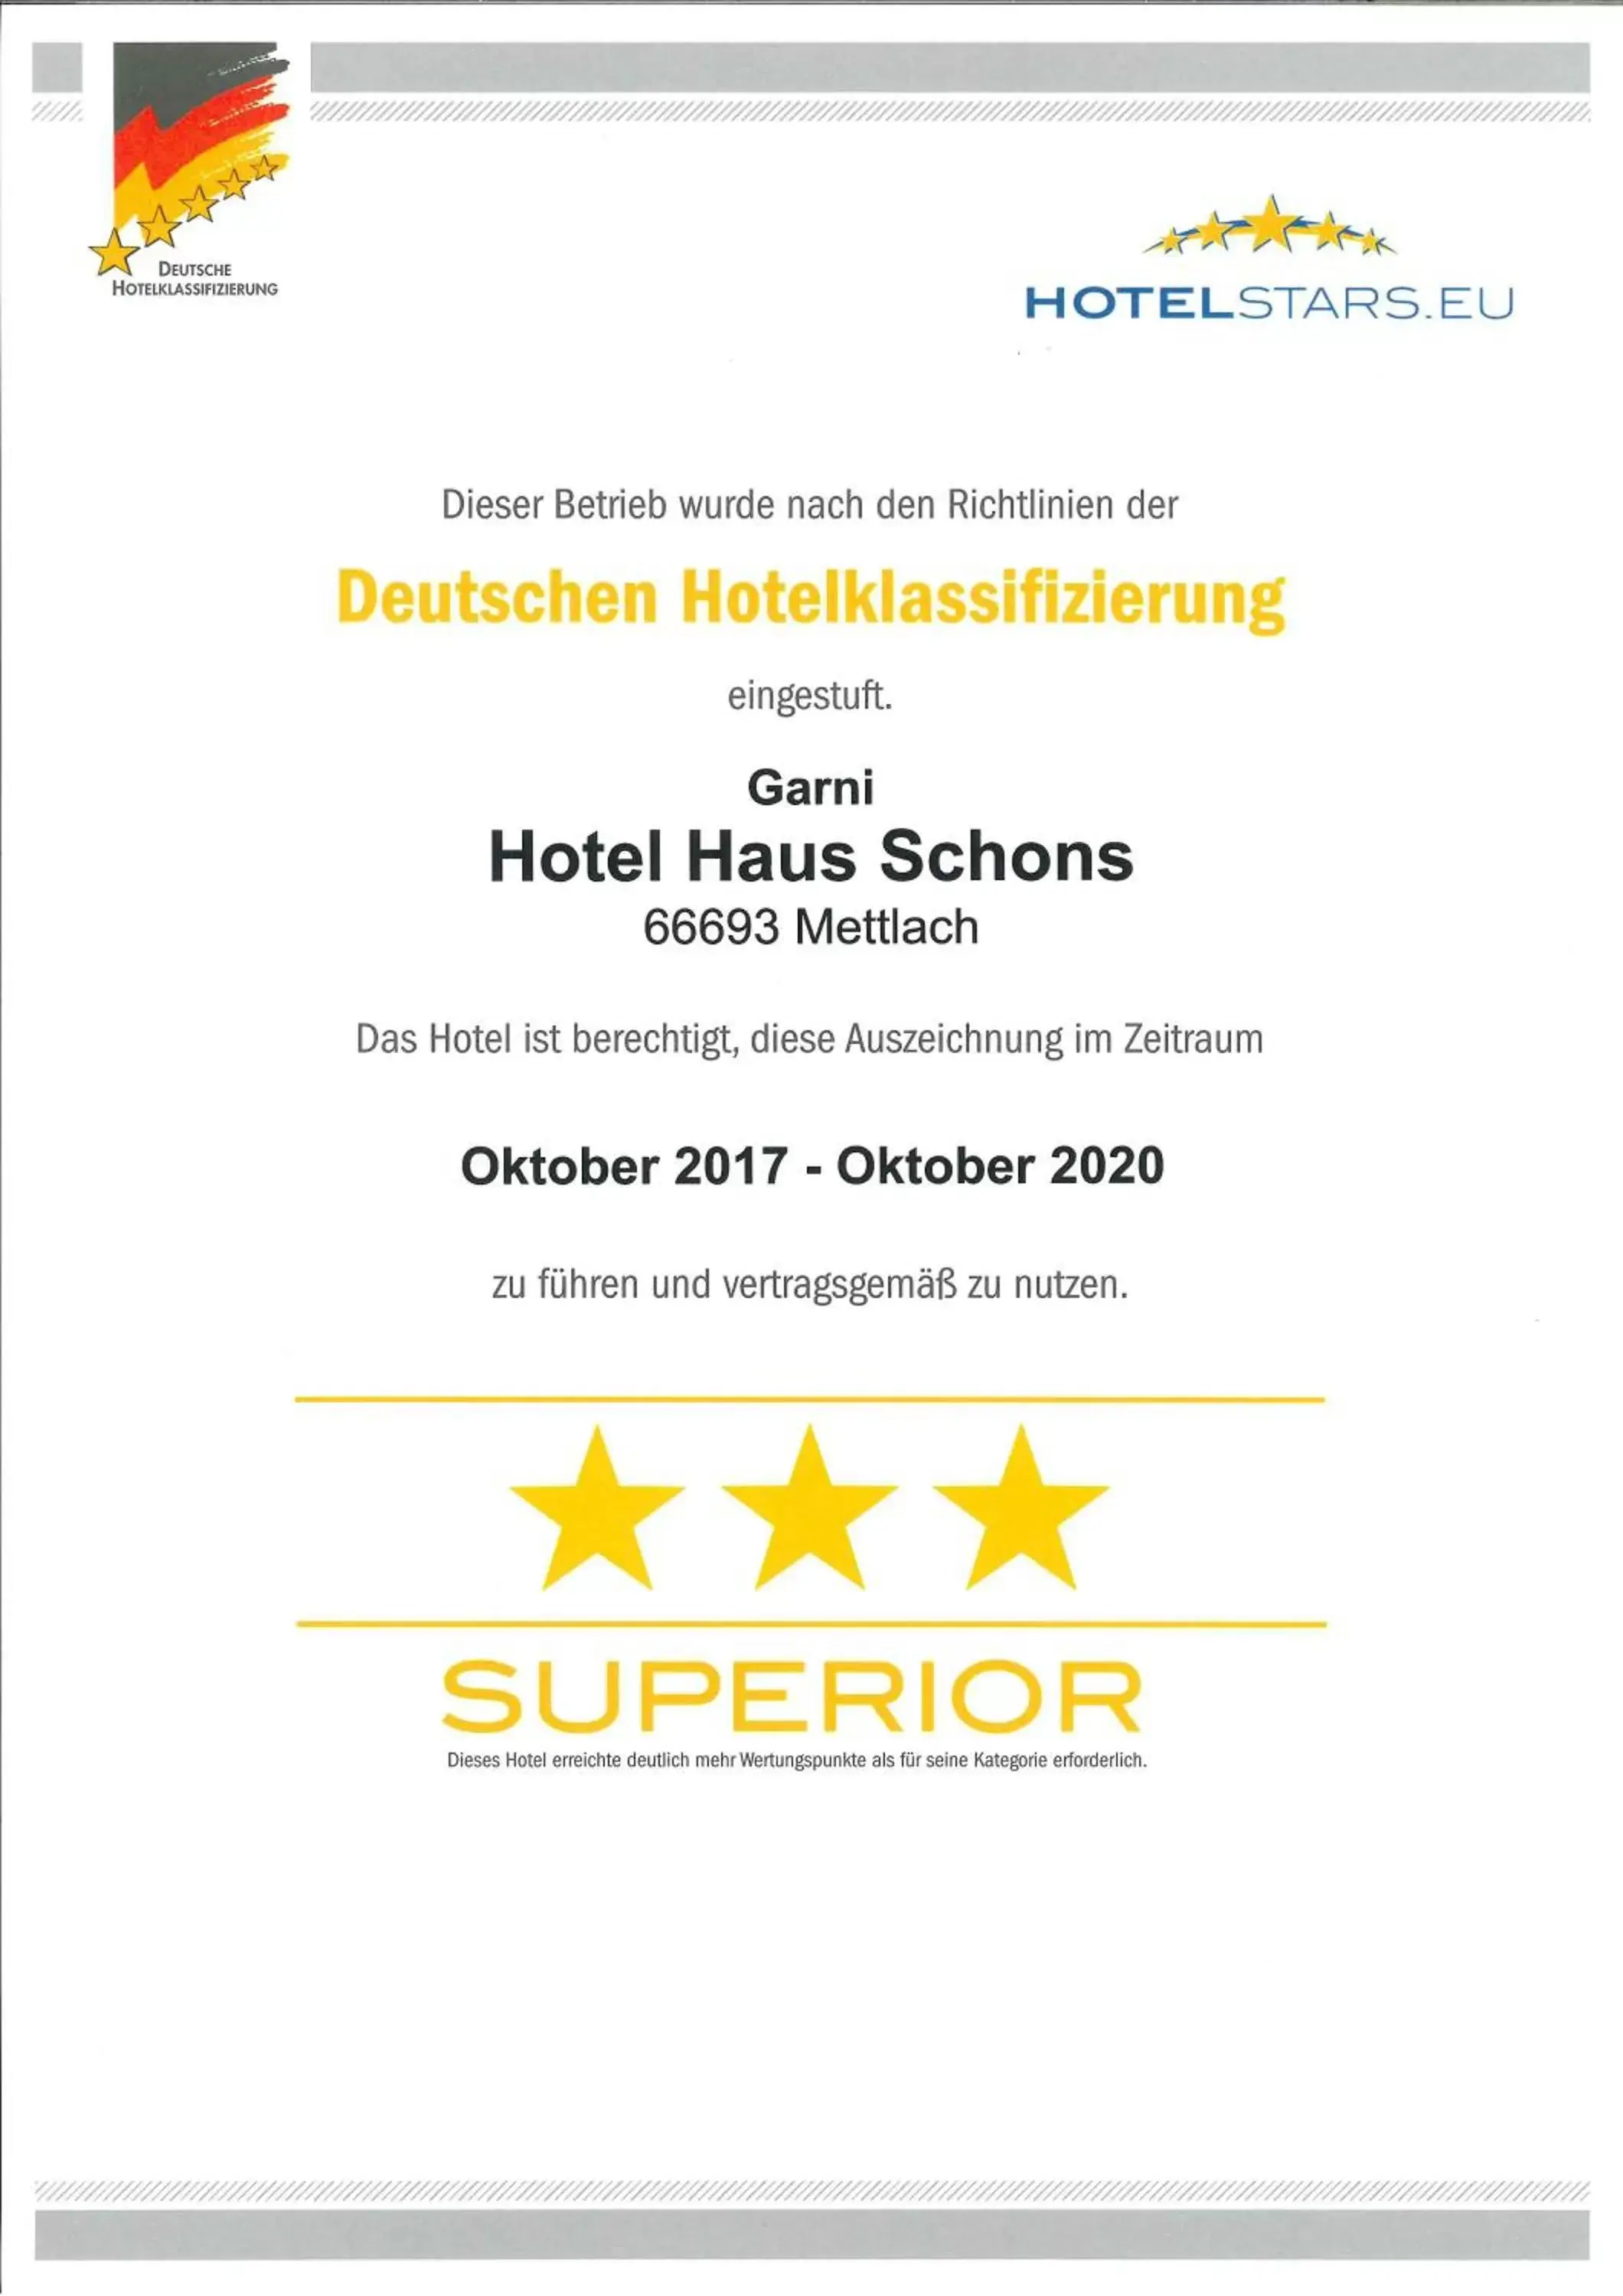 Certificate/Award in Hotel Haus Schons